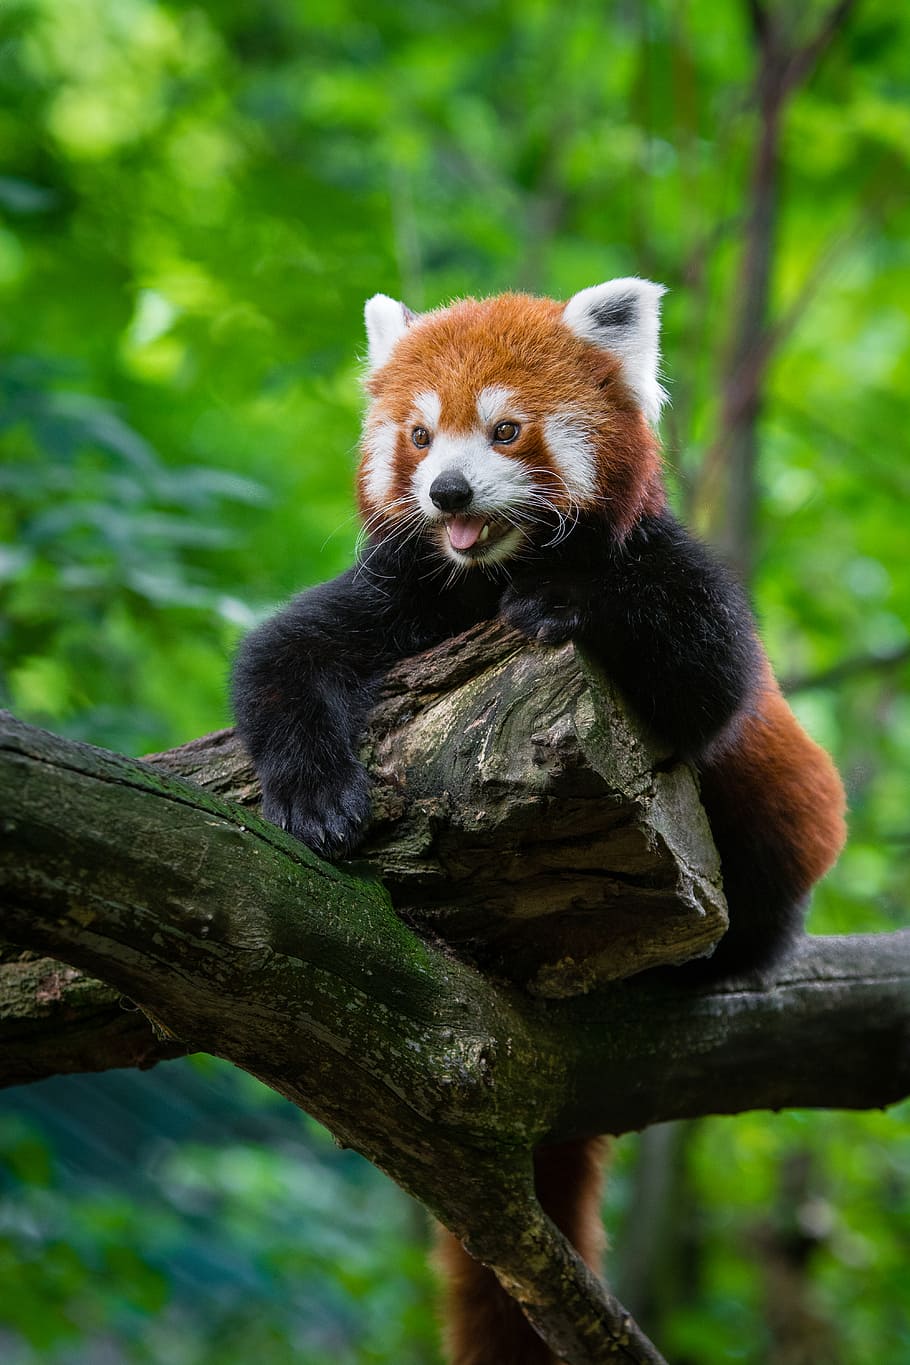 Red Panda, panda, bear, tree, branch, daytime, animal themes, animal, animal wildlife, mammal